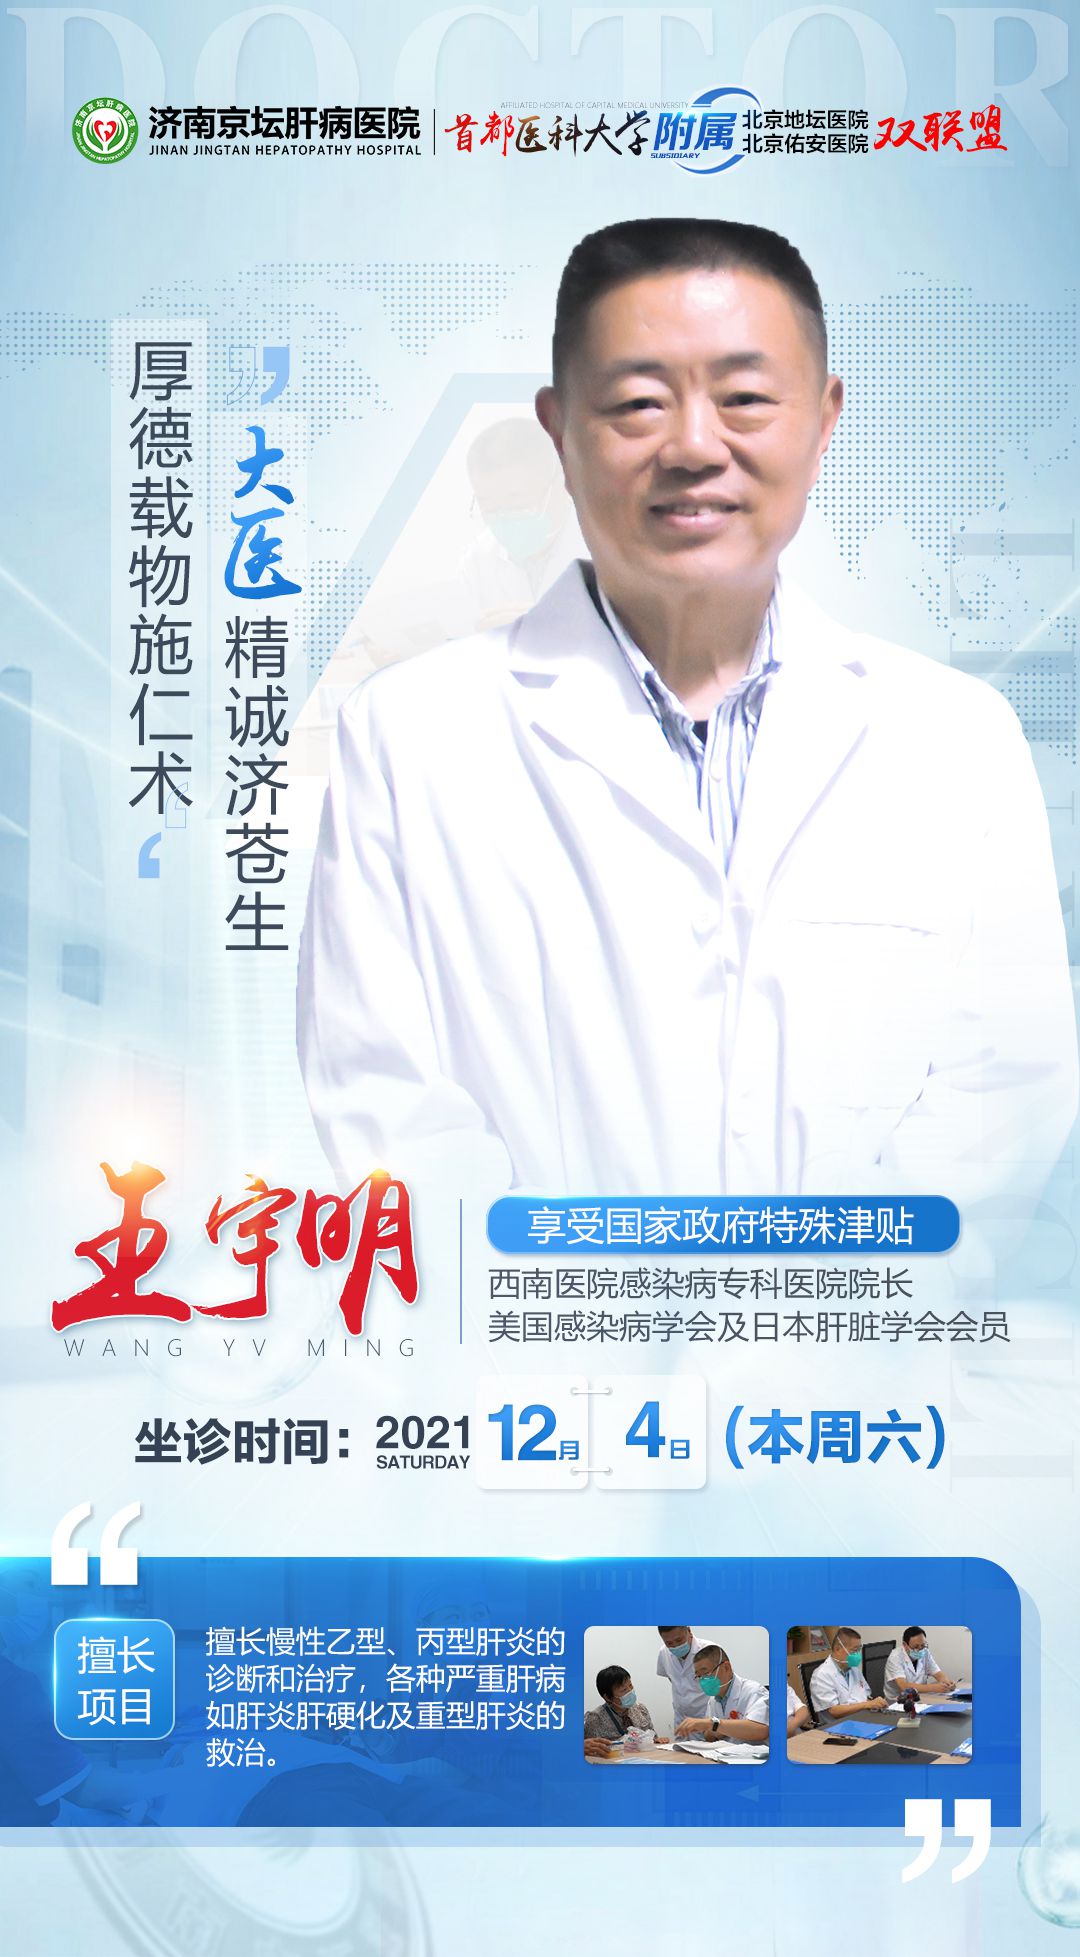 坐诊通知|北京肝病专家王宇明教授亲诊,限量抢约！